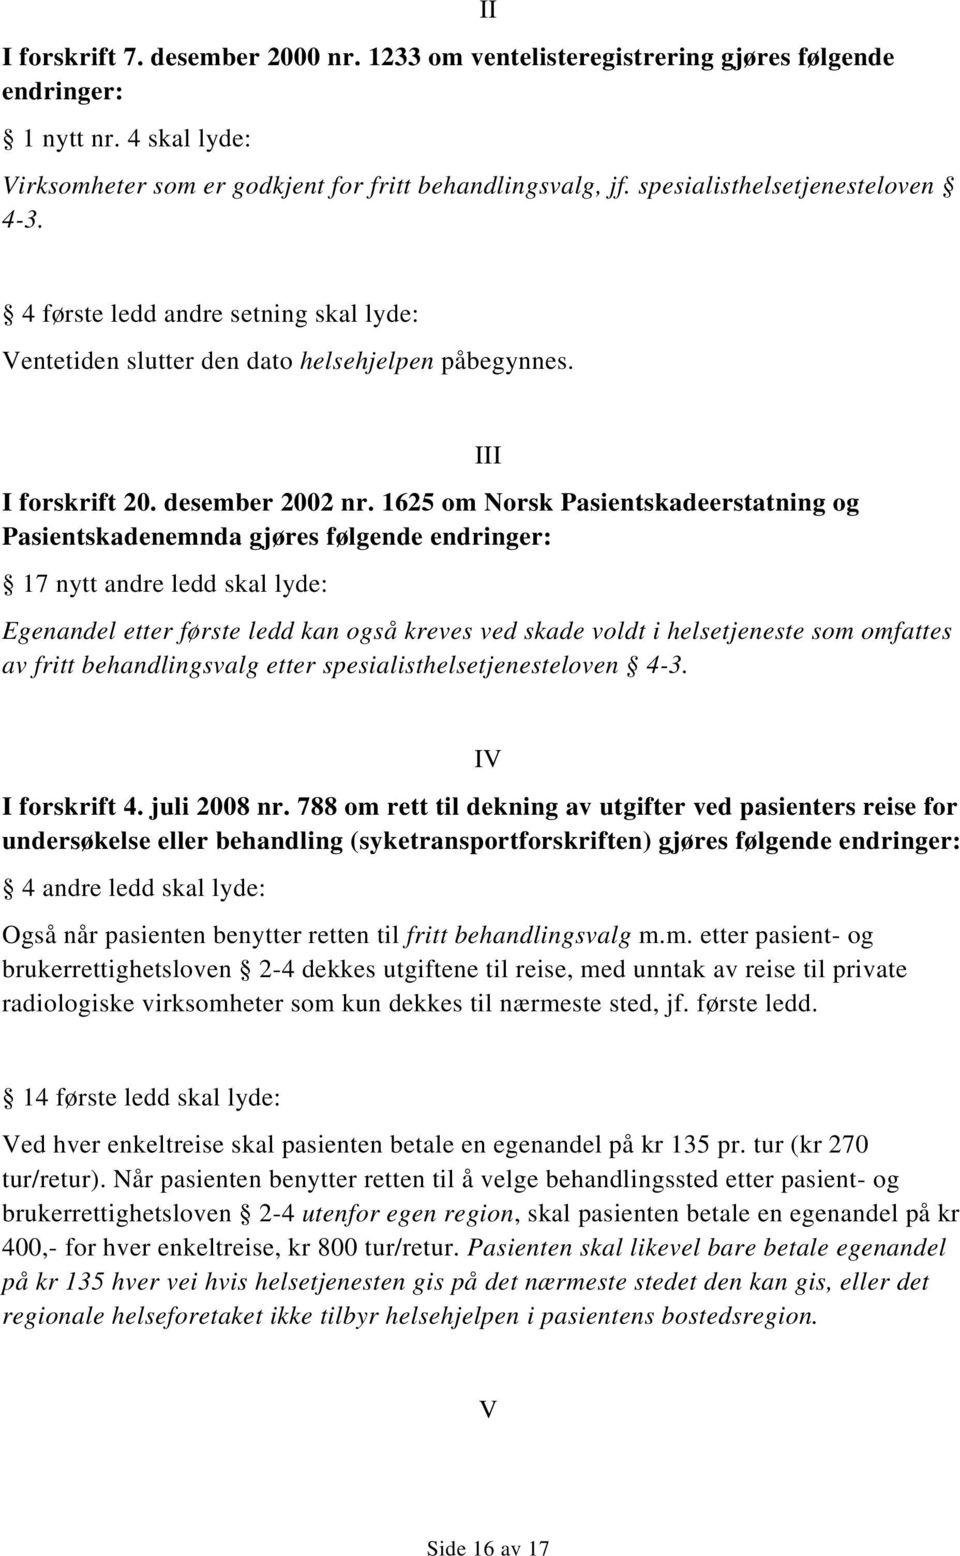 1625 om Norsk Pasientskadeerstatning og Pasientskadenemnda gjøres følgende endringer: 17 nytt andre ledd skal lyde: III Egenandel etter første ledd kan også kreves ved skade voldt i helsetjeneste som